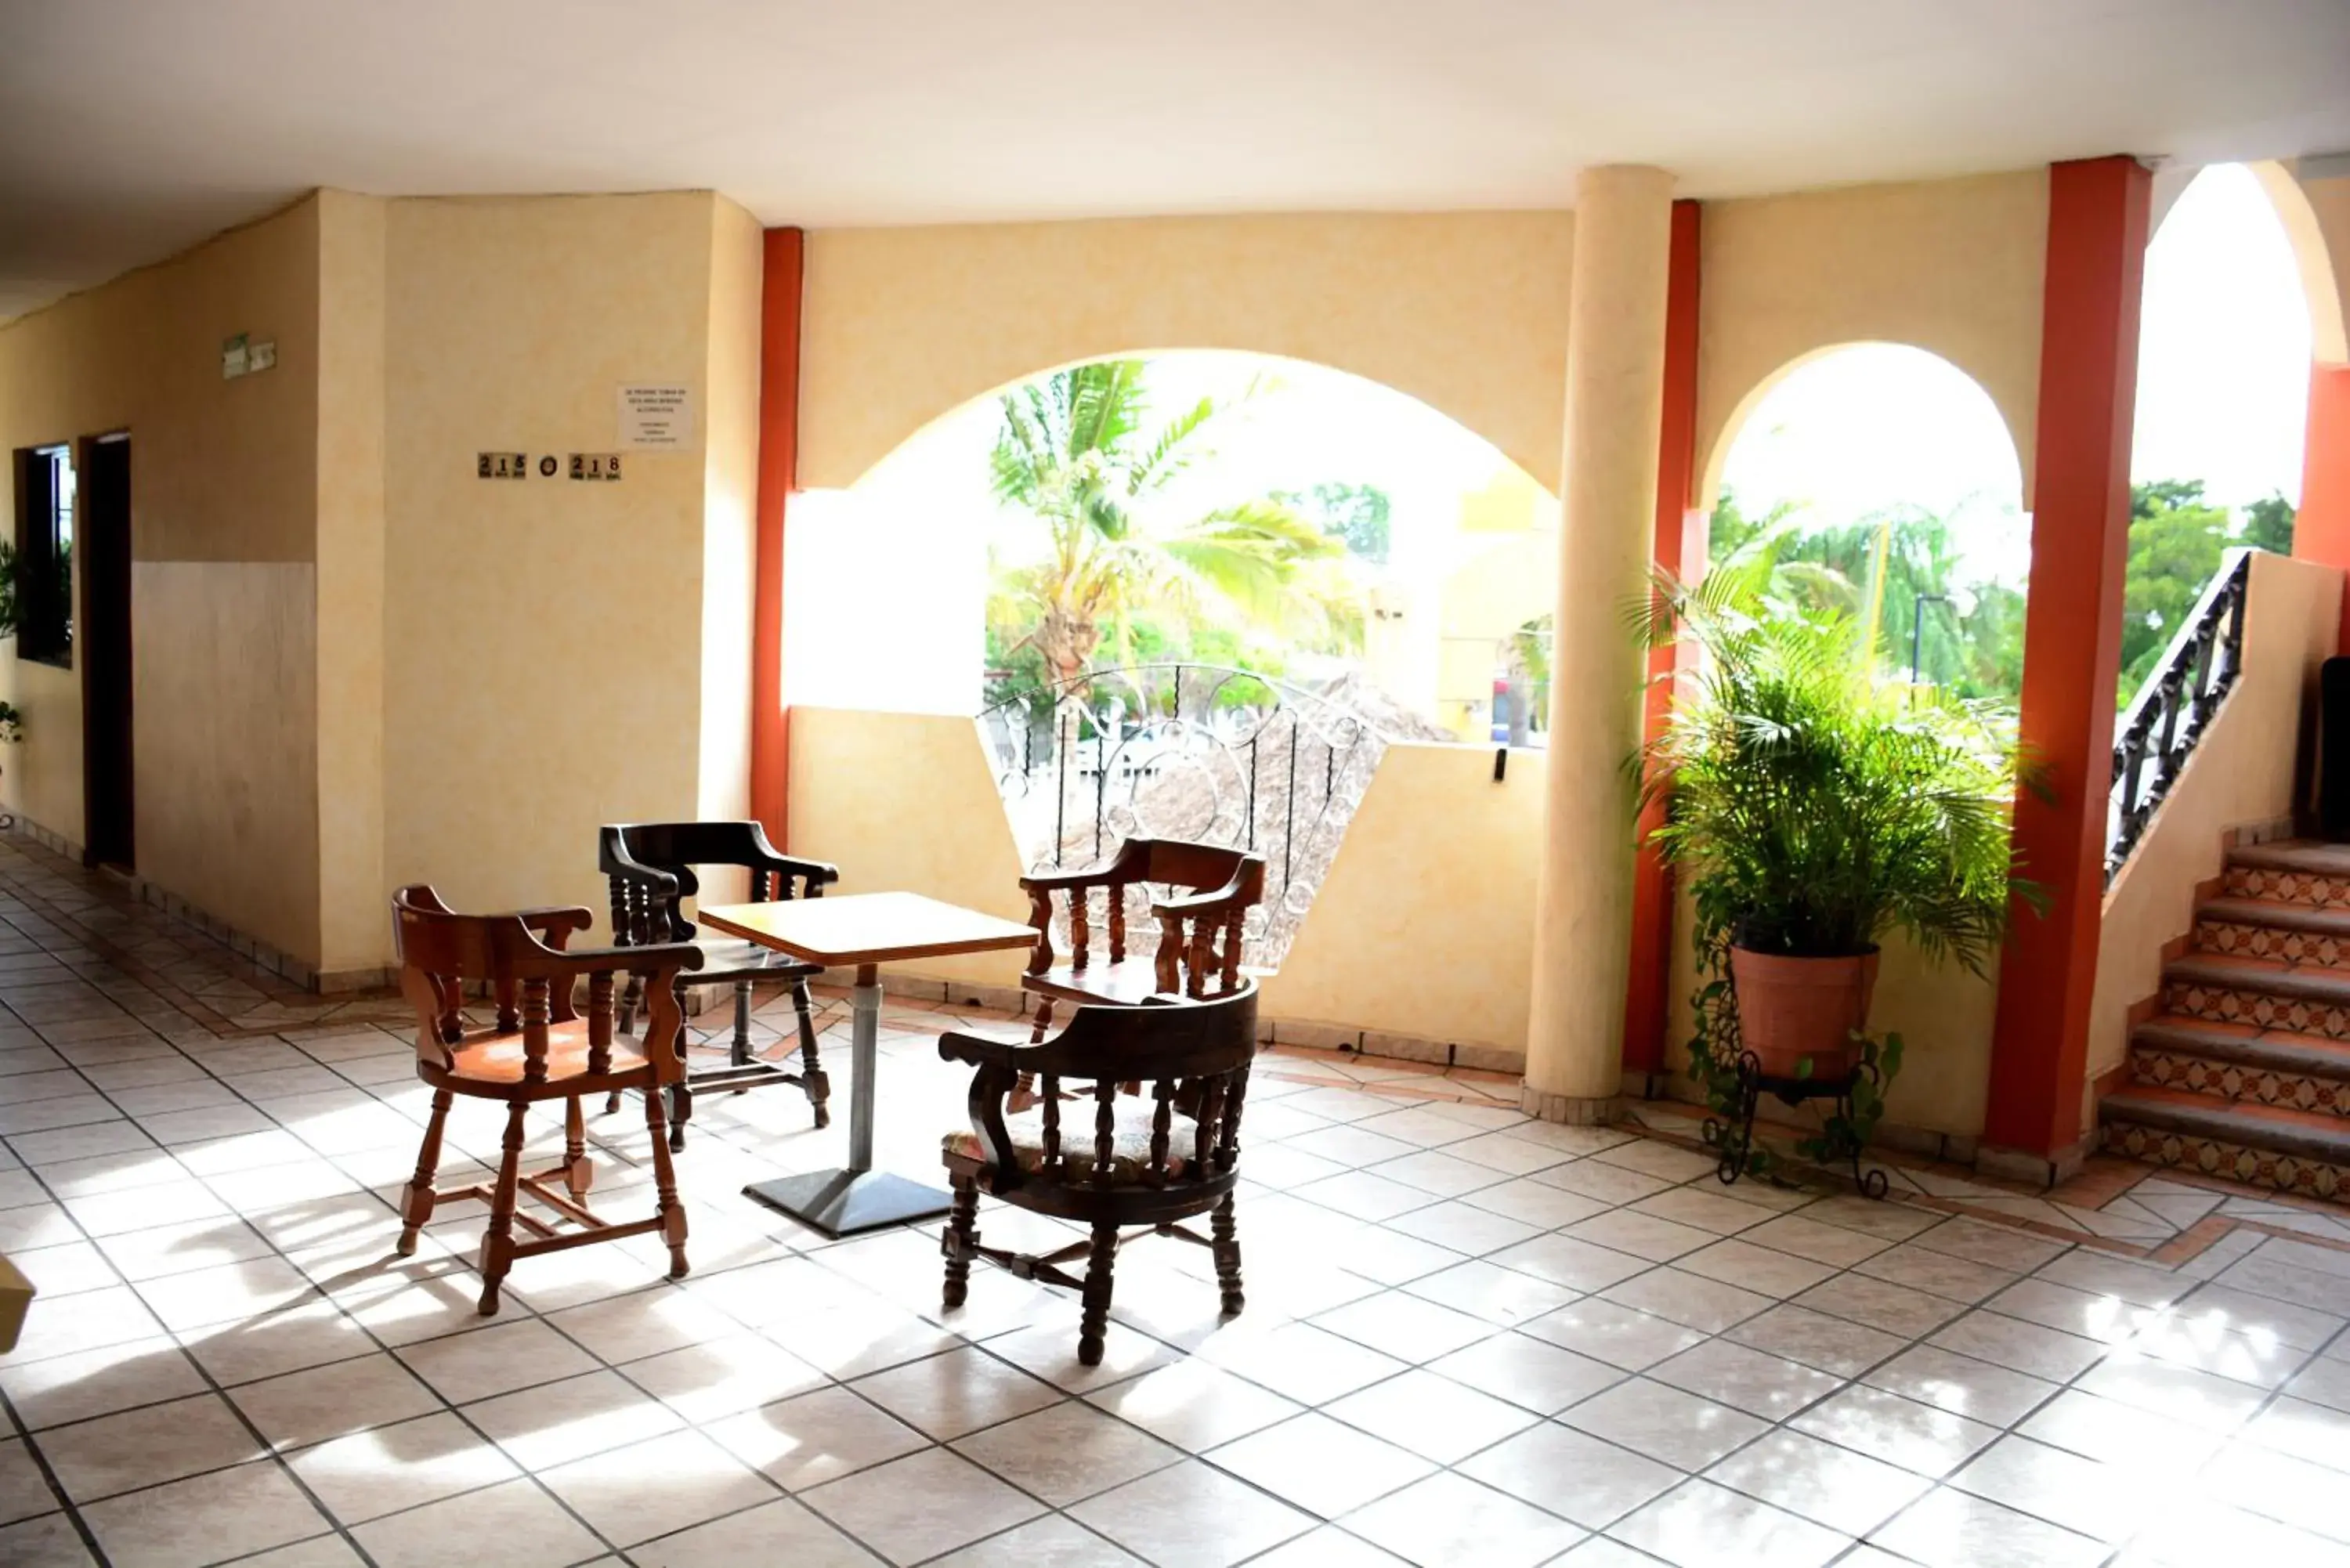 Balcony/Terrace, Dining Area in Hotel Las Fuentes